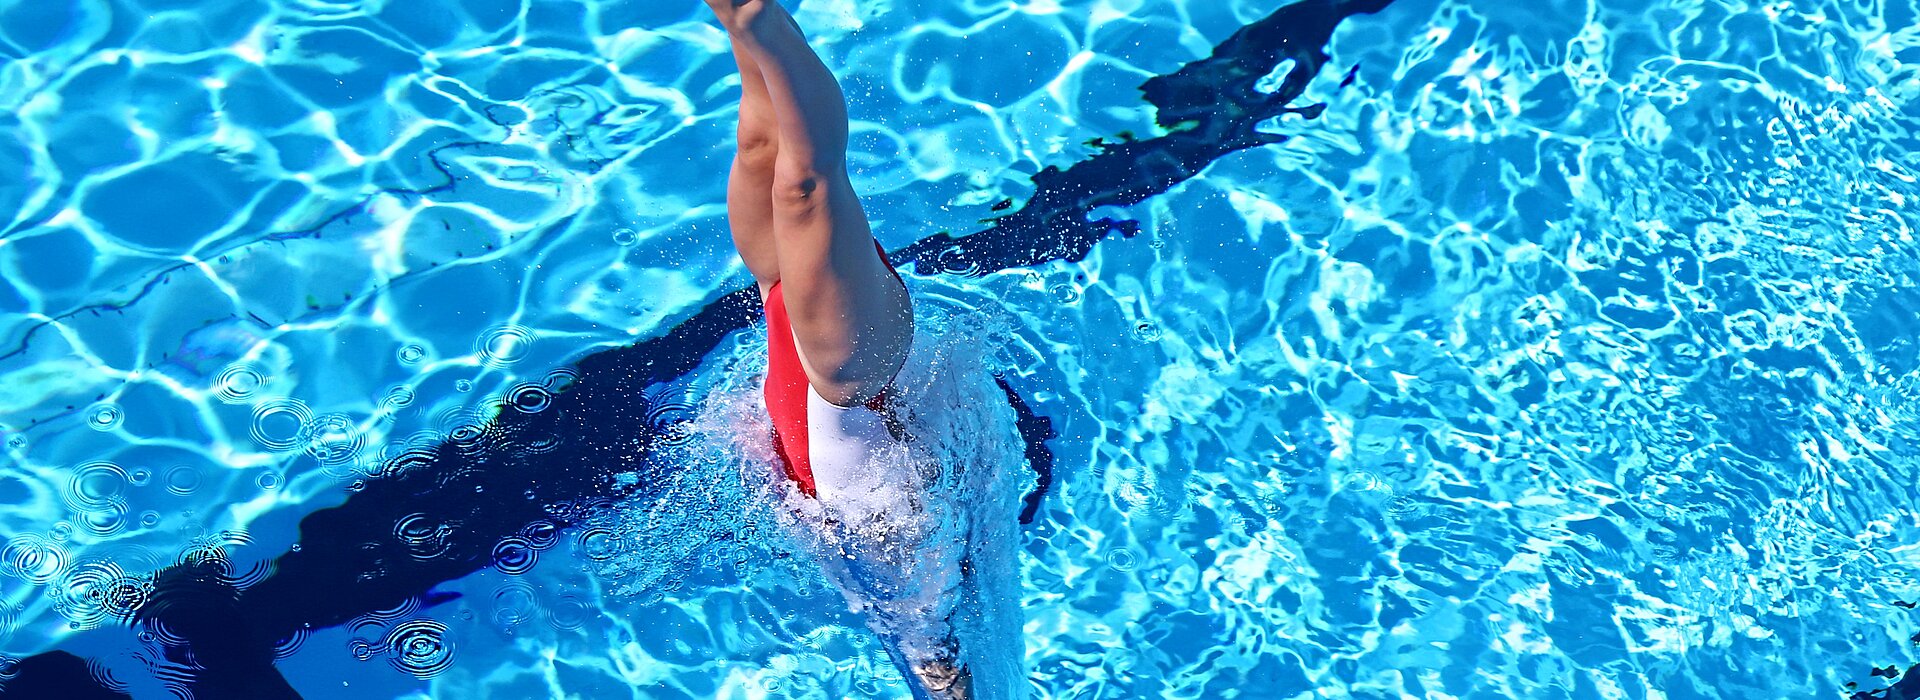 Atleta treinando nado artístico na piscina 